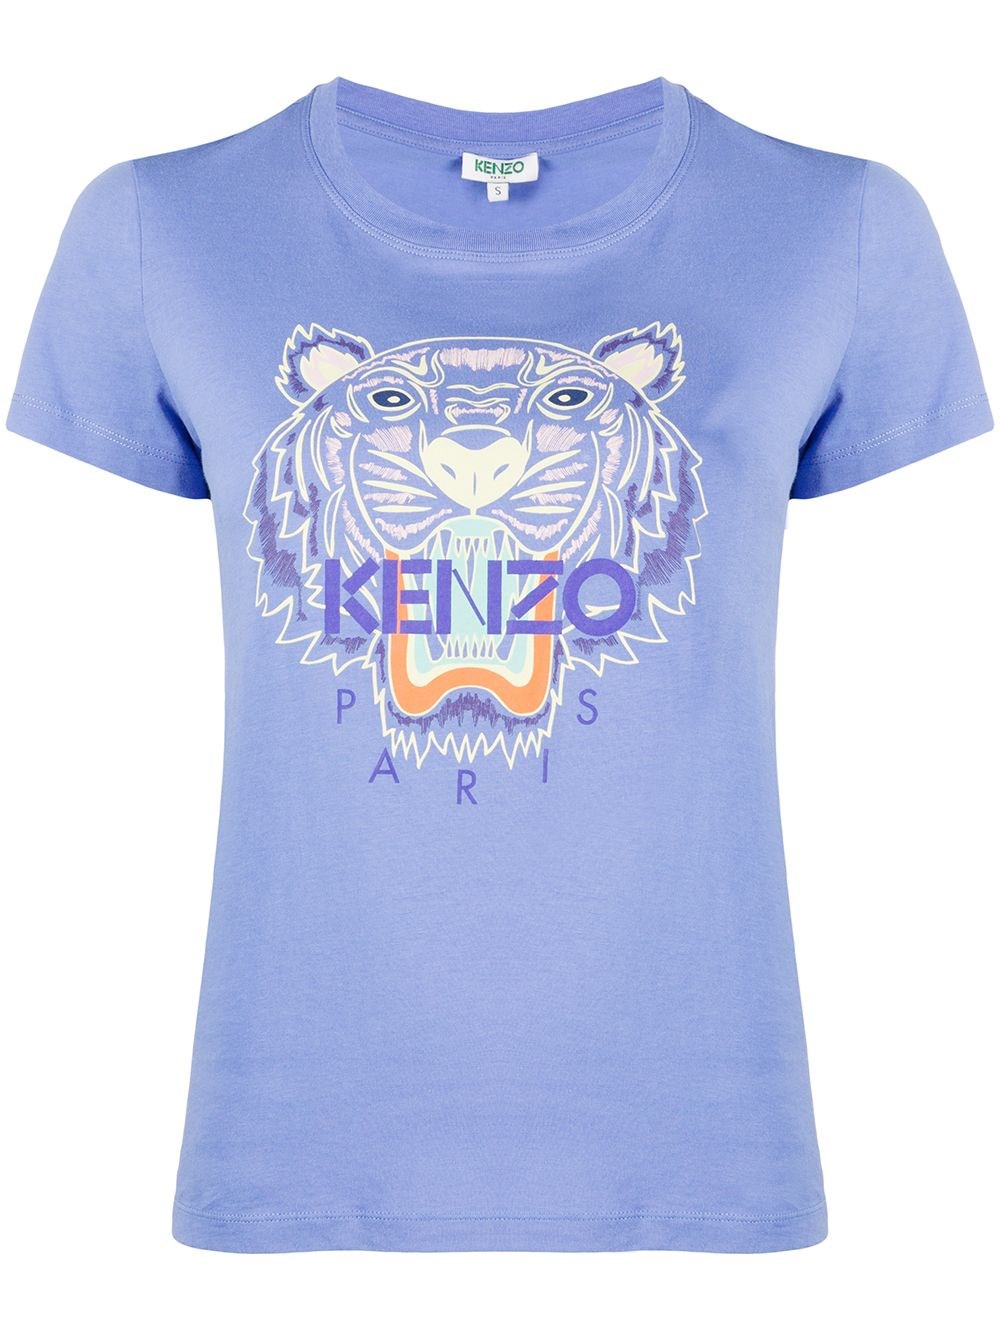 purple kenzo t shirt Off 63% - canerofset.com